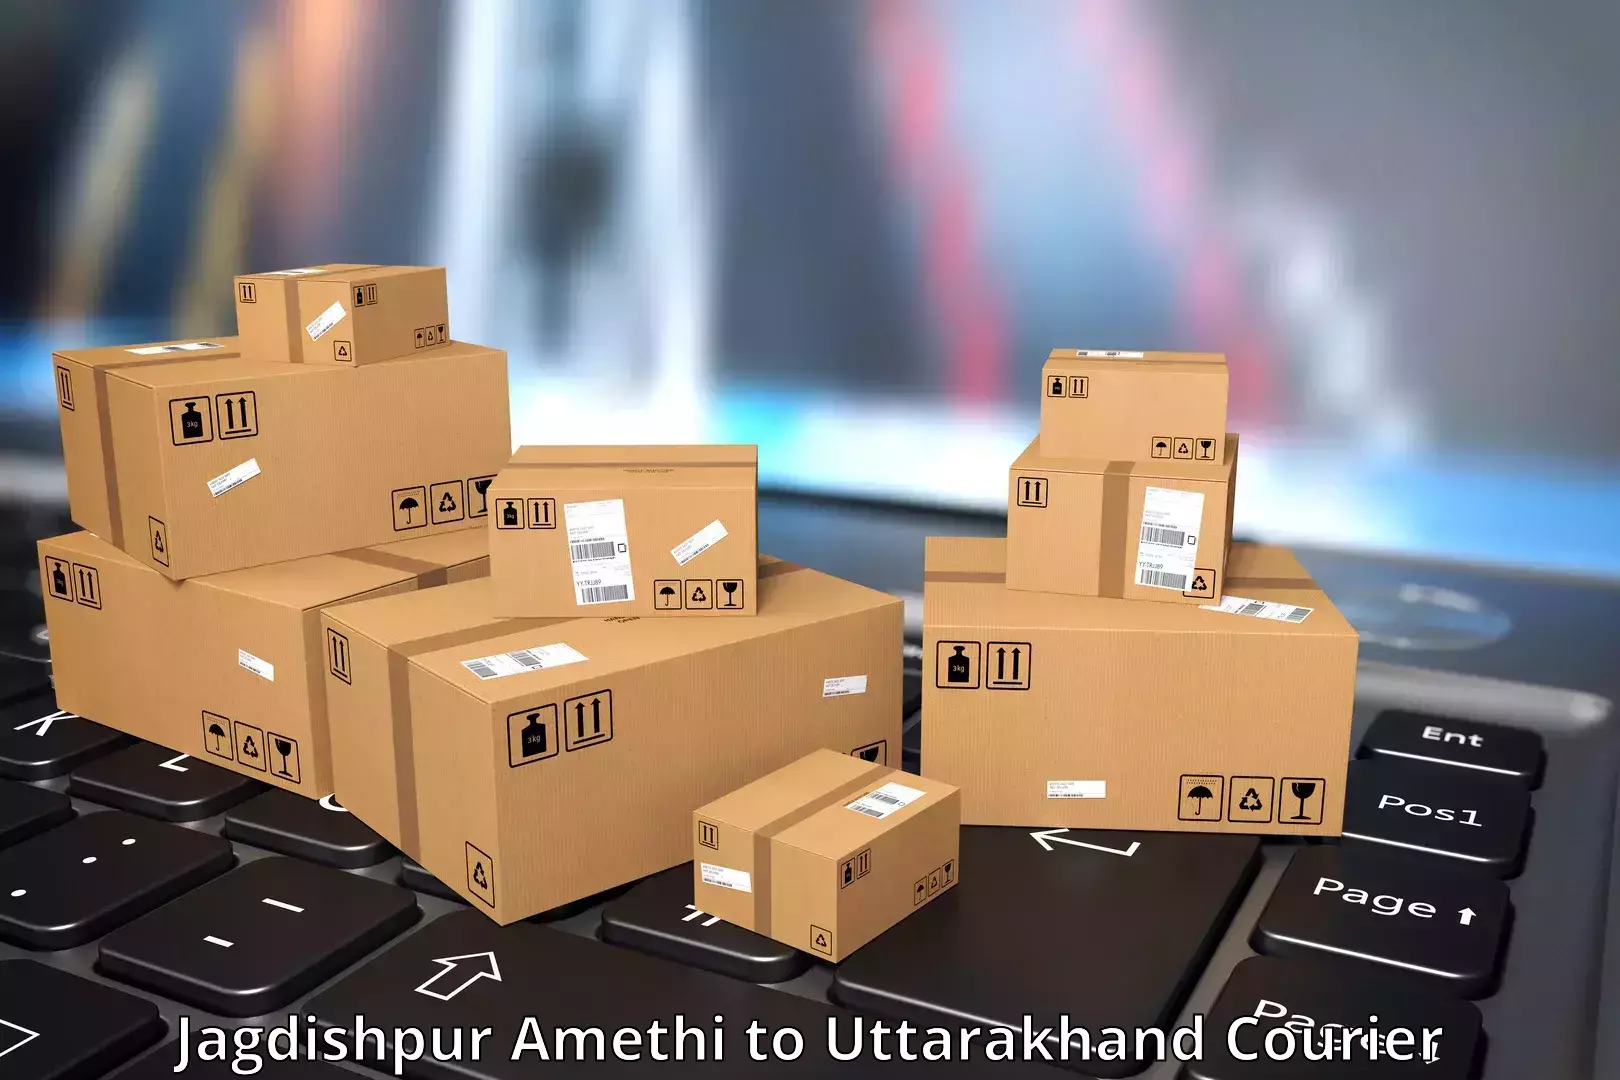 Door-to-door freight service Jagdishpur Amethi to Uttarakhand